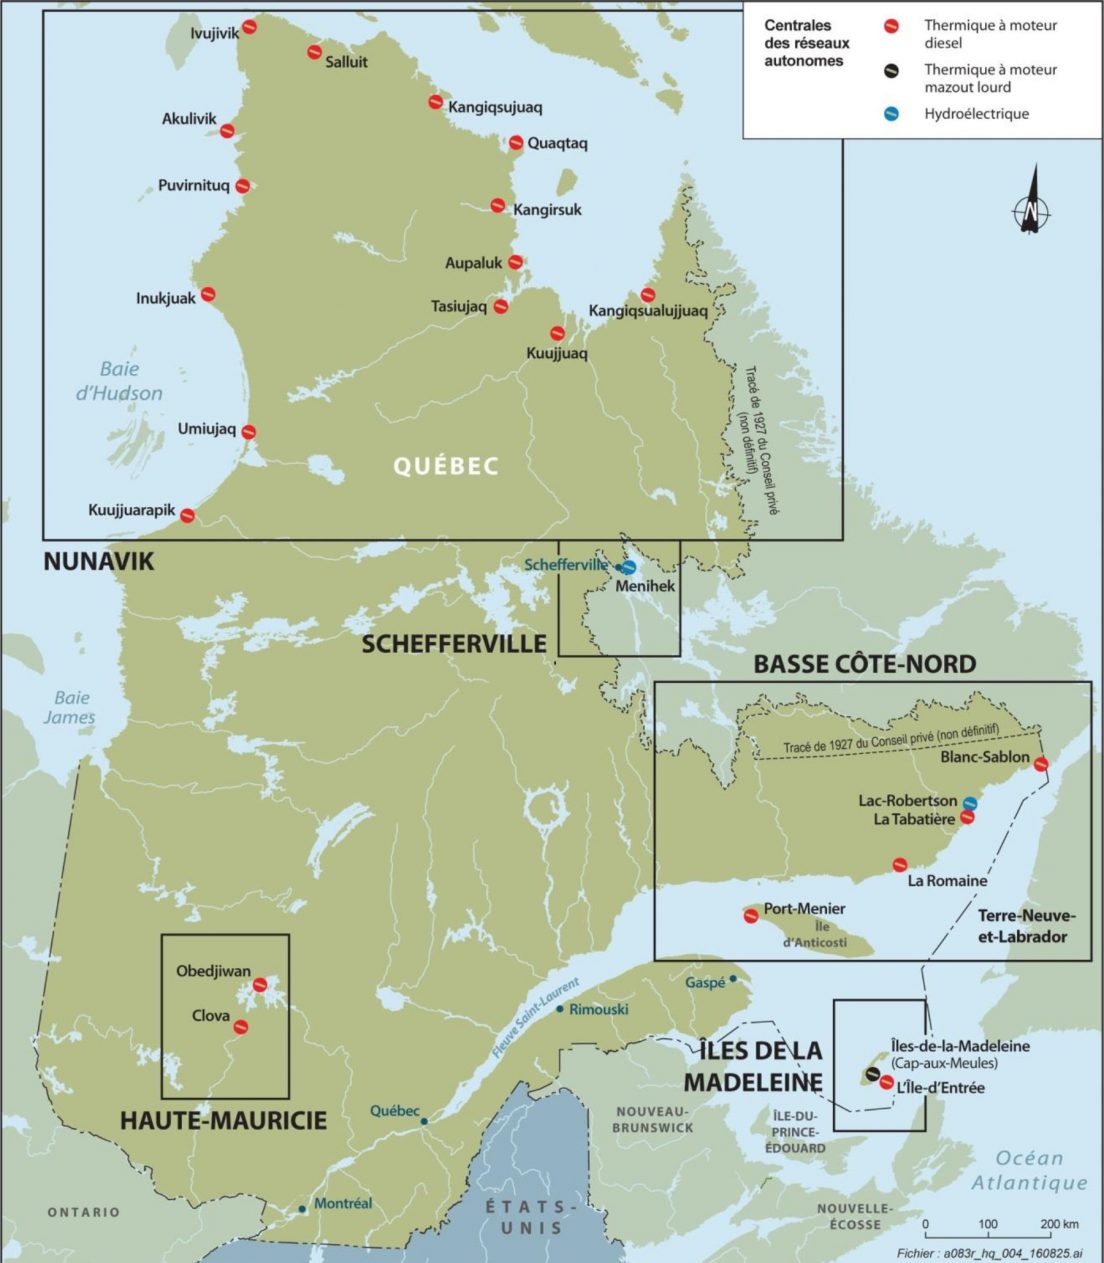 Carte des réseaux autonomes d'Hydro Québec